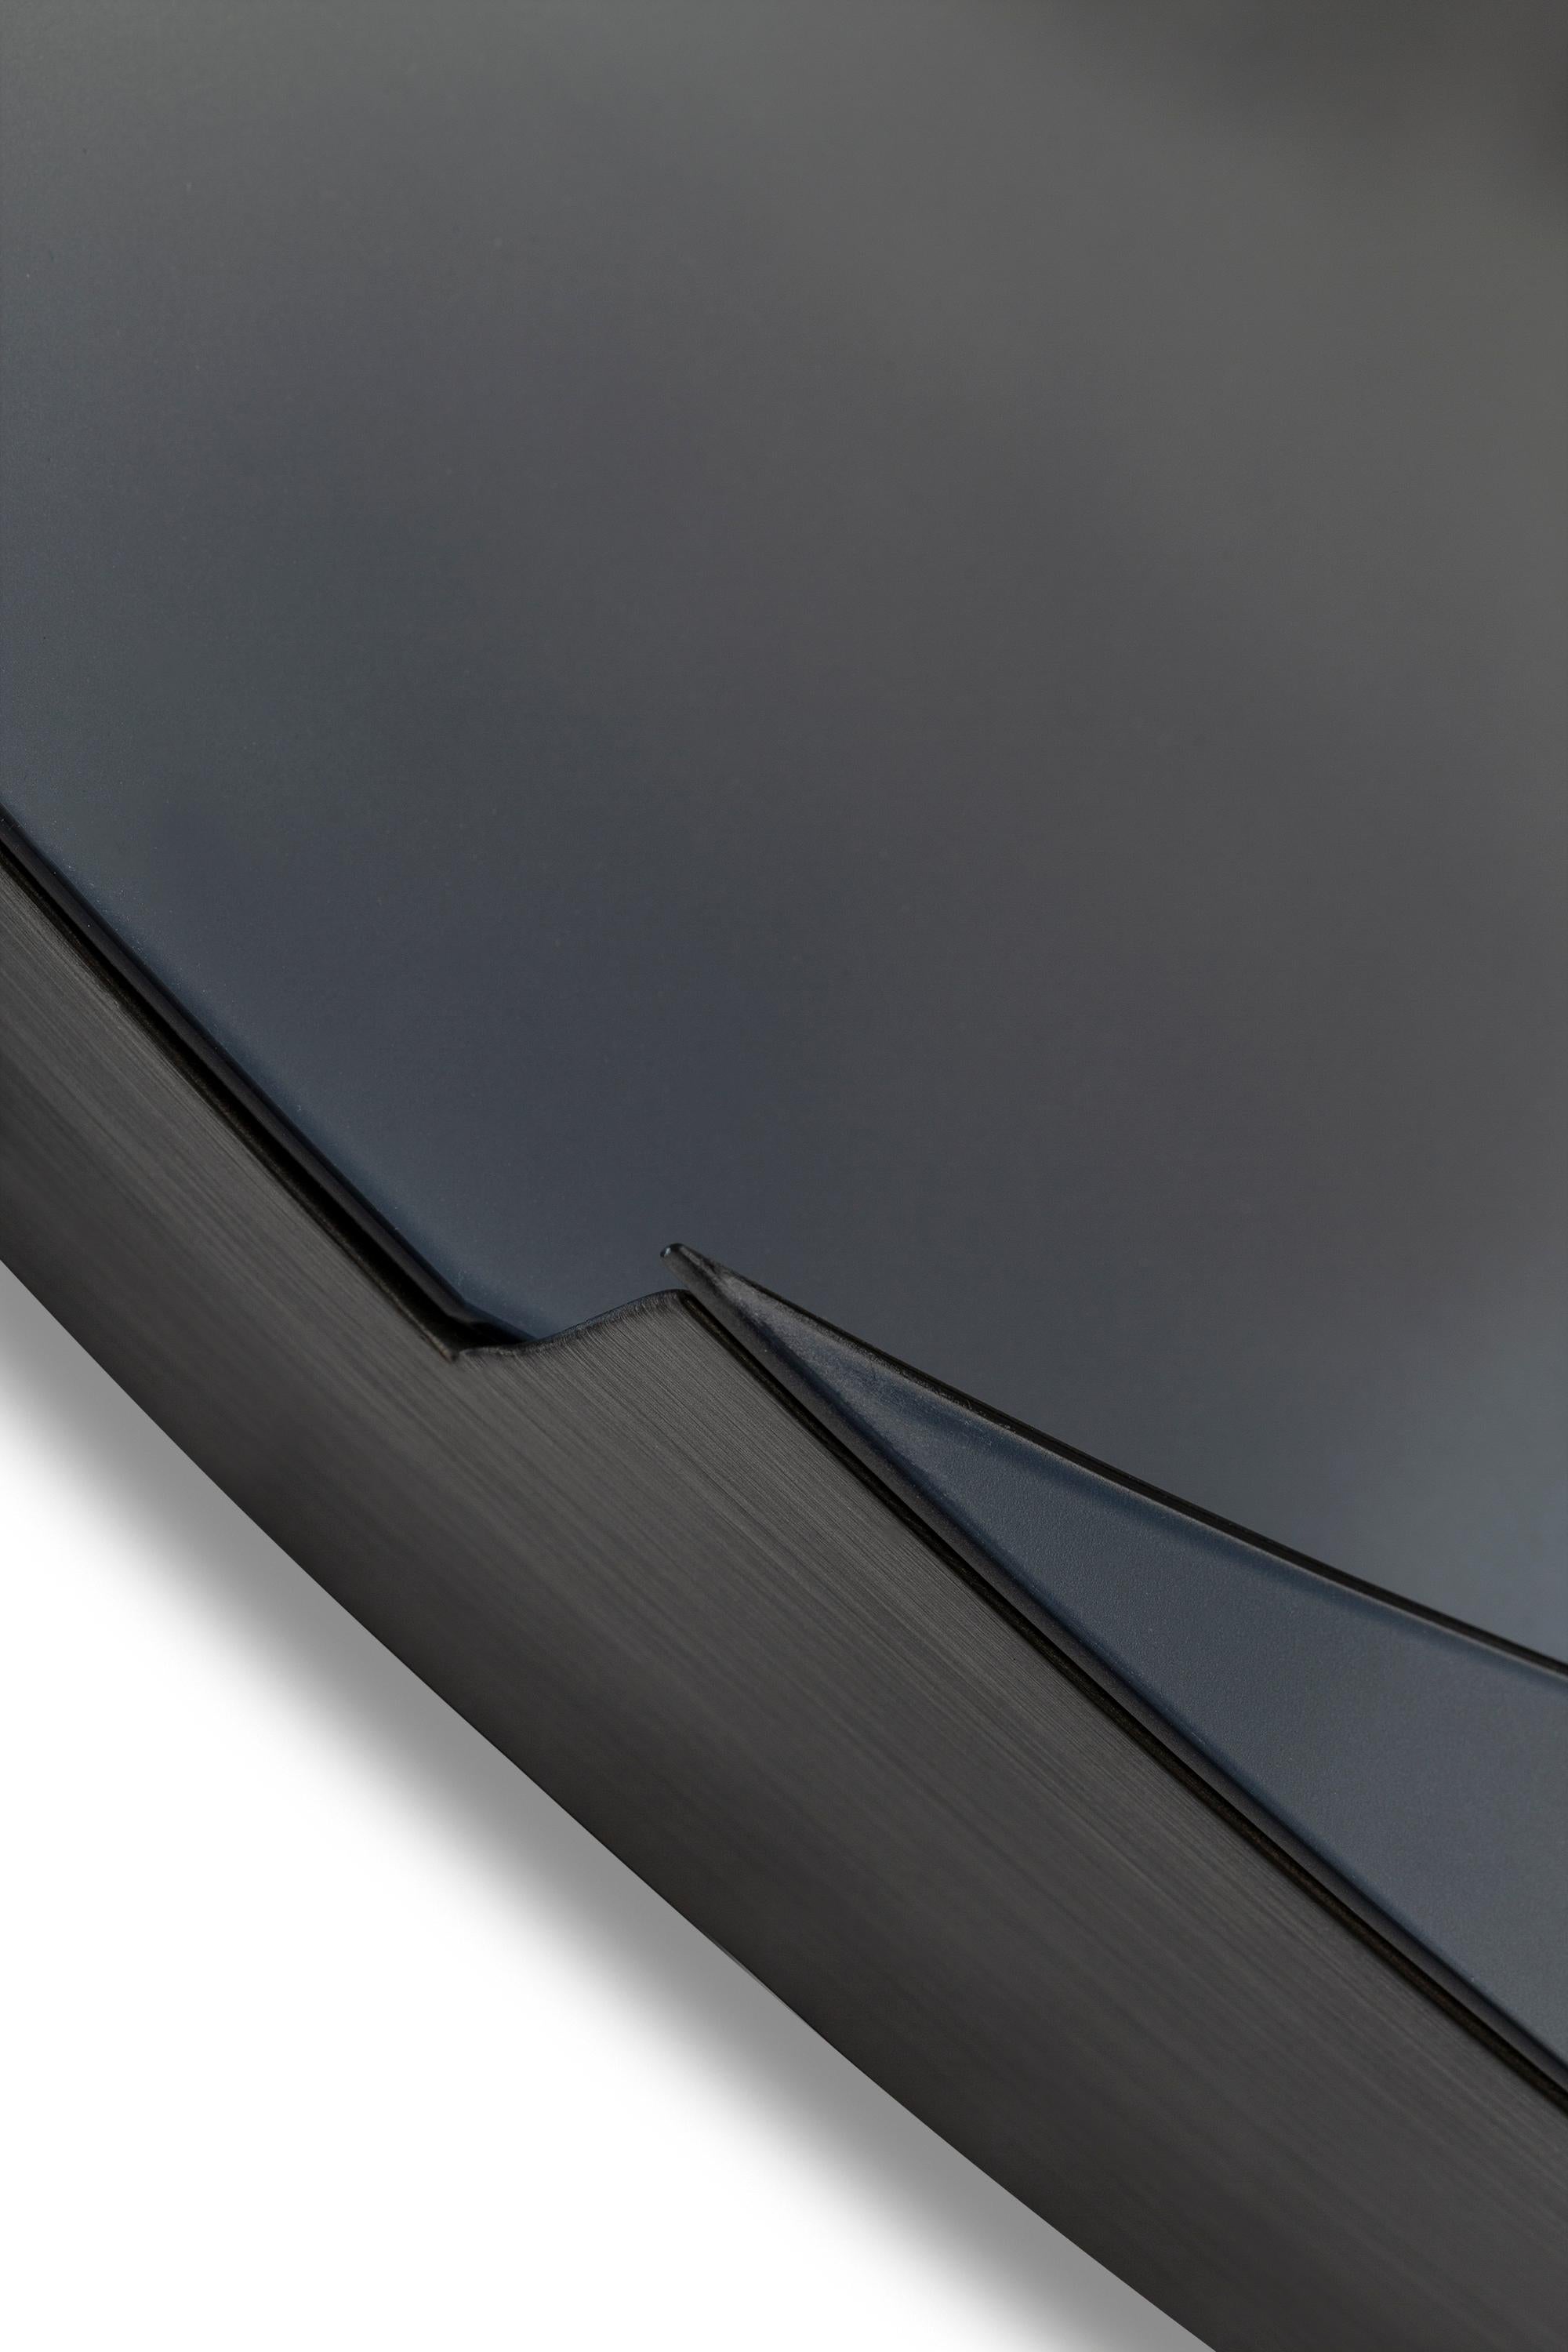 Specchio #1, 2019
Ovaler handgefertigter Farbspiegel
Einzigartig 
5 bis 6 Wochen Produktion
Diese Spiegelkomposition ist das Ergebnis von zweidimensionalen Formen, die in zwei verschiedenen Tiefen angeordnet sind. Der Spiegel wird von einer Struktur